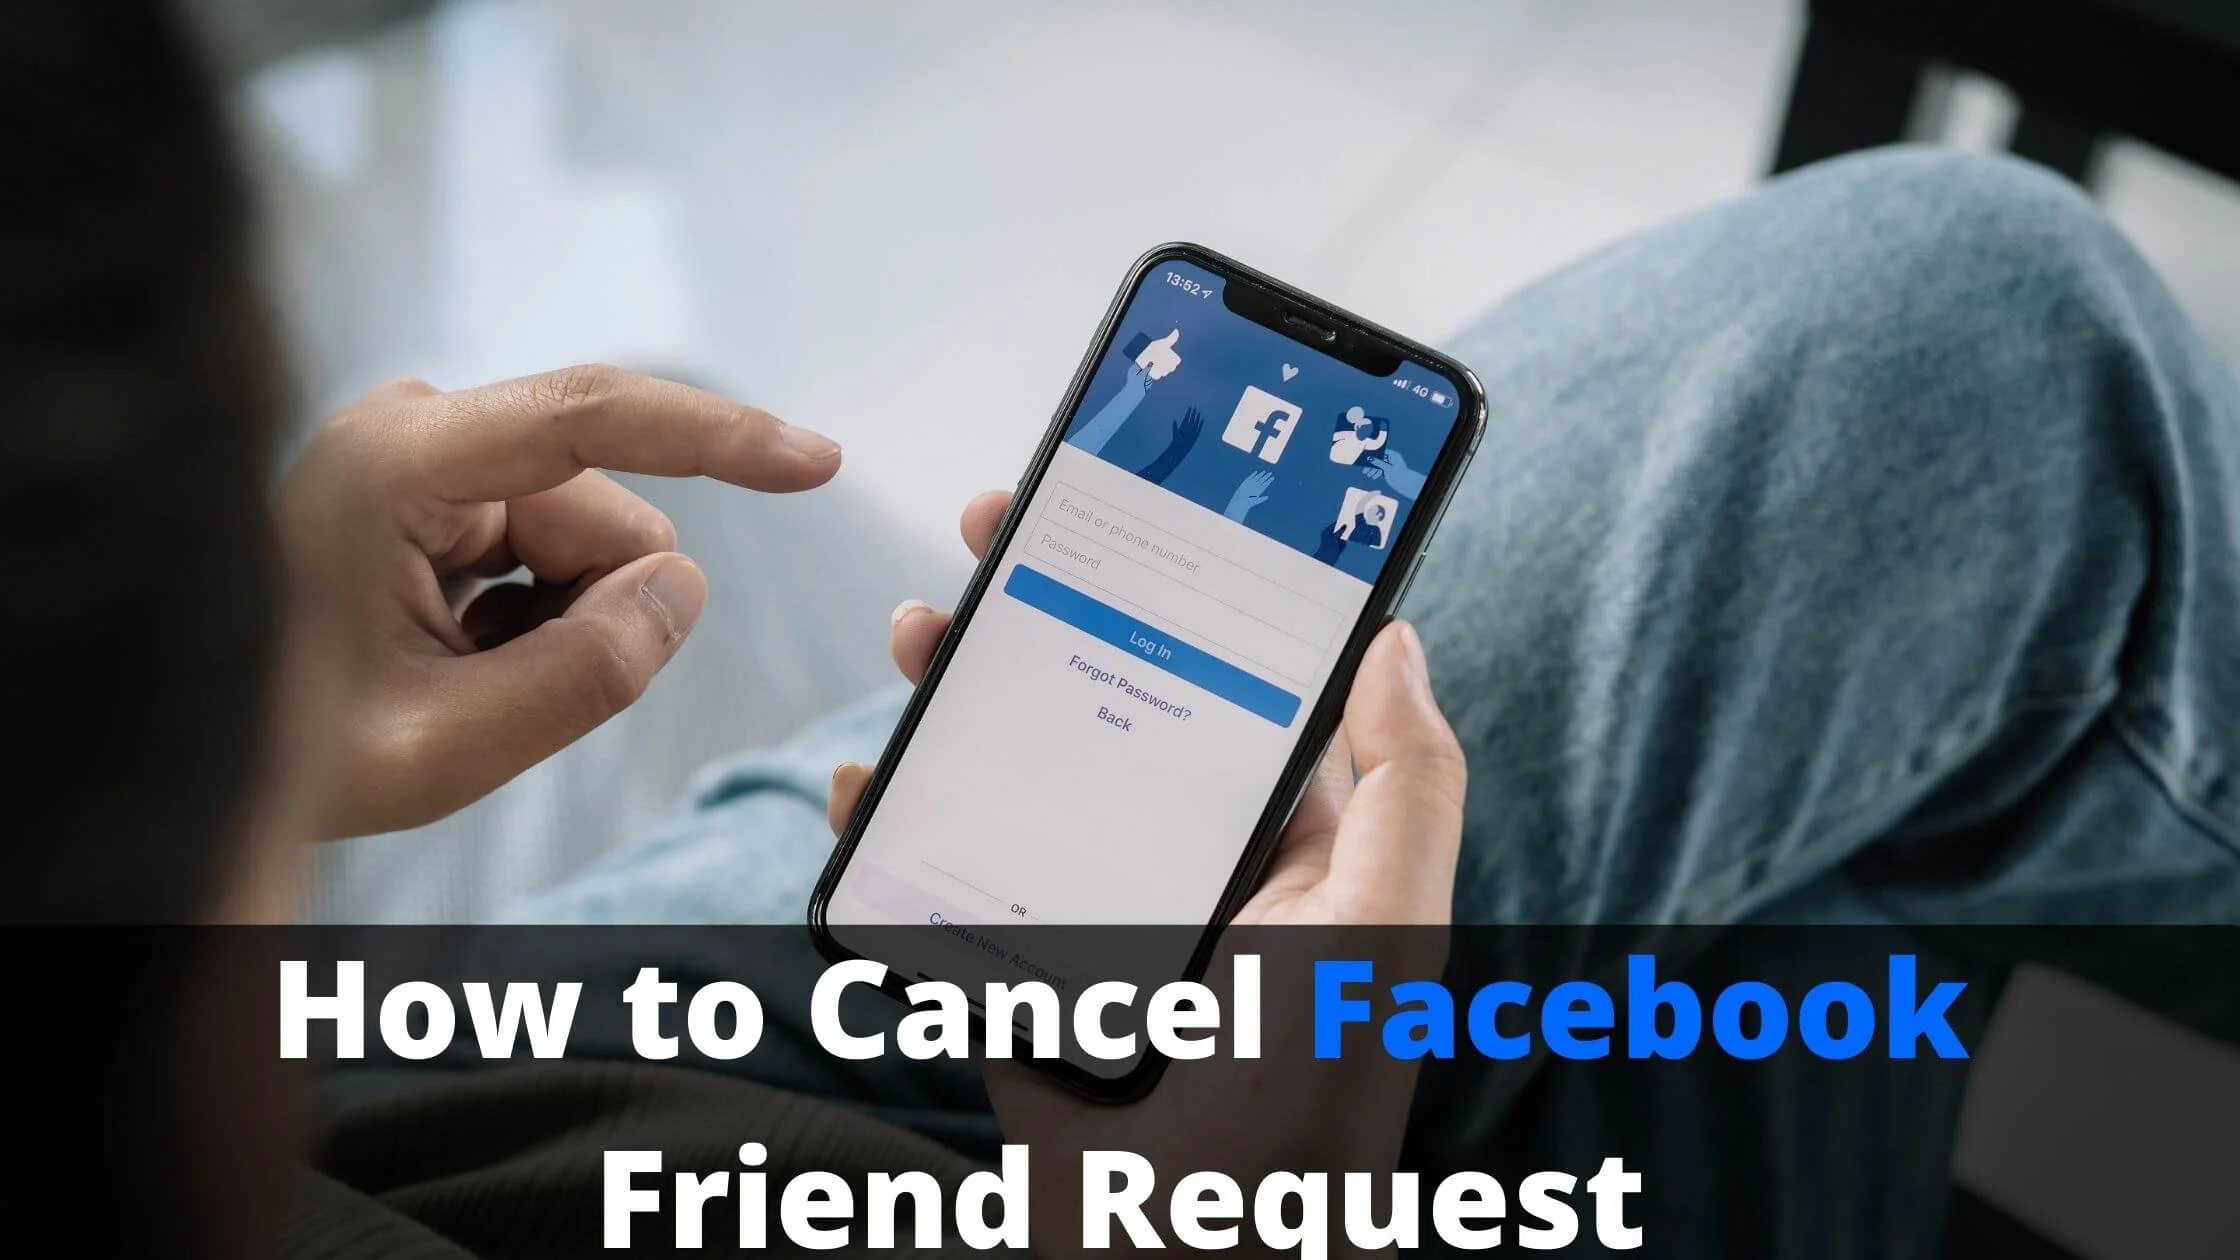 Cancel Facebook Friend Request